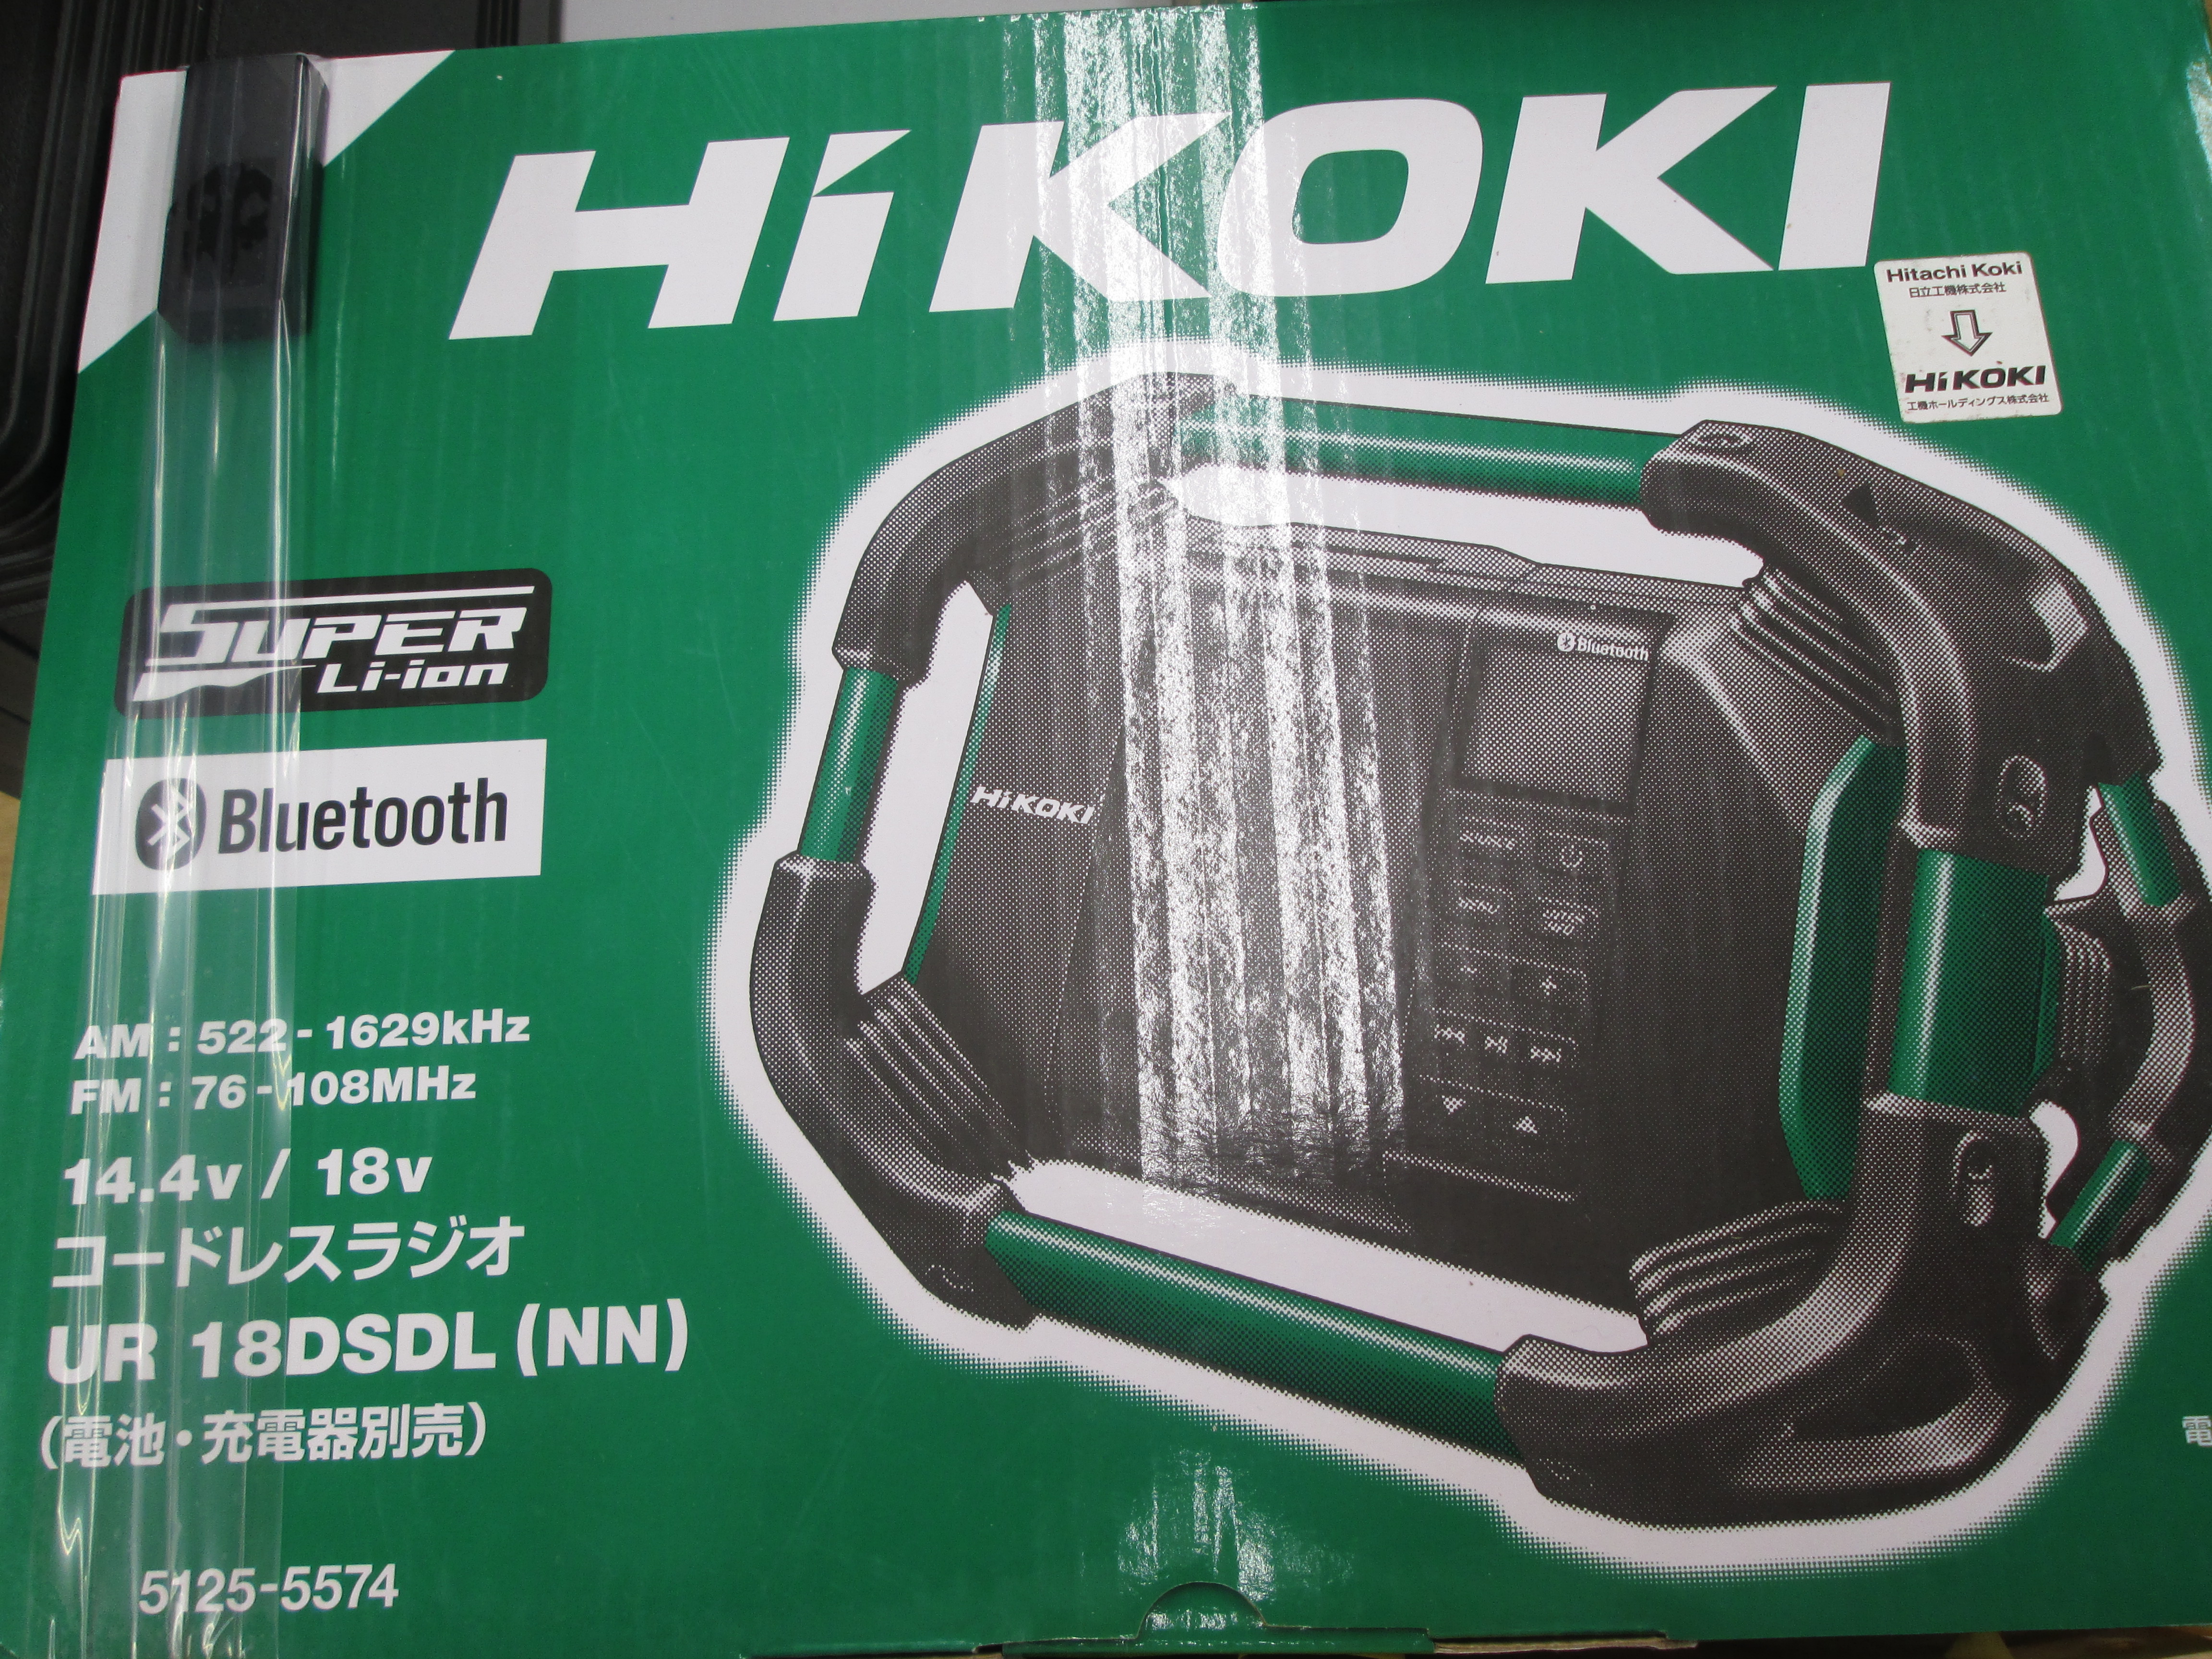 HITACHI ハイコーキ ポータブルラジオ コードレスラジオ UR18DSDL+